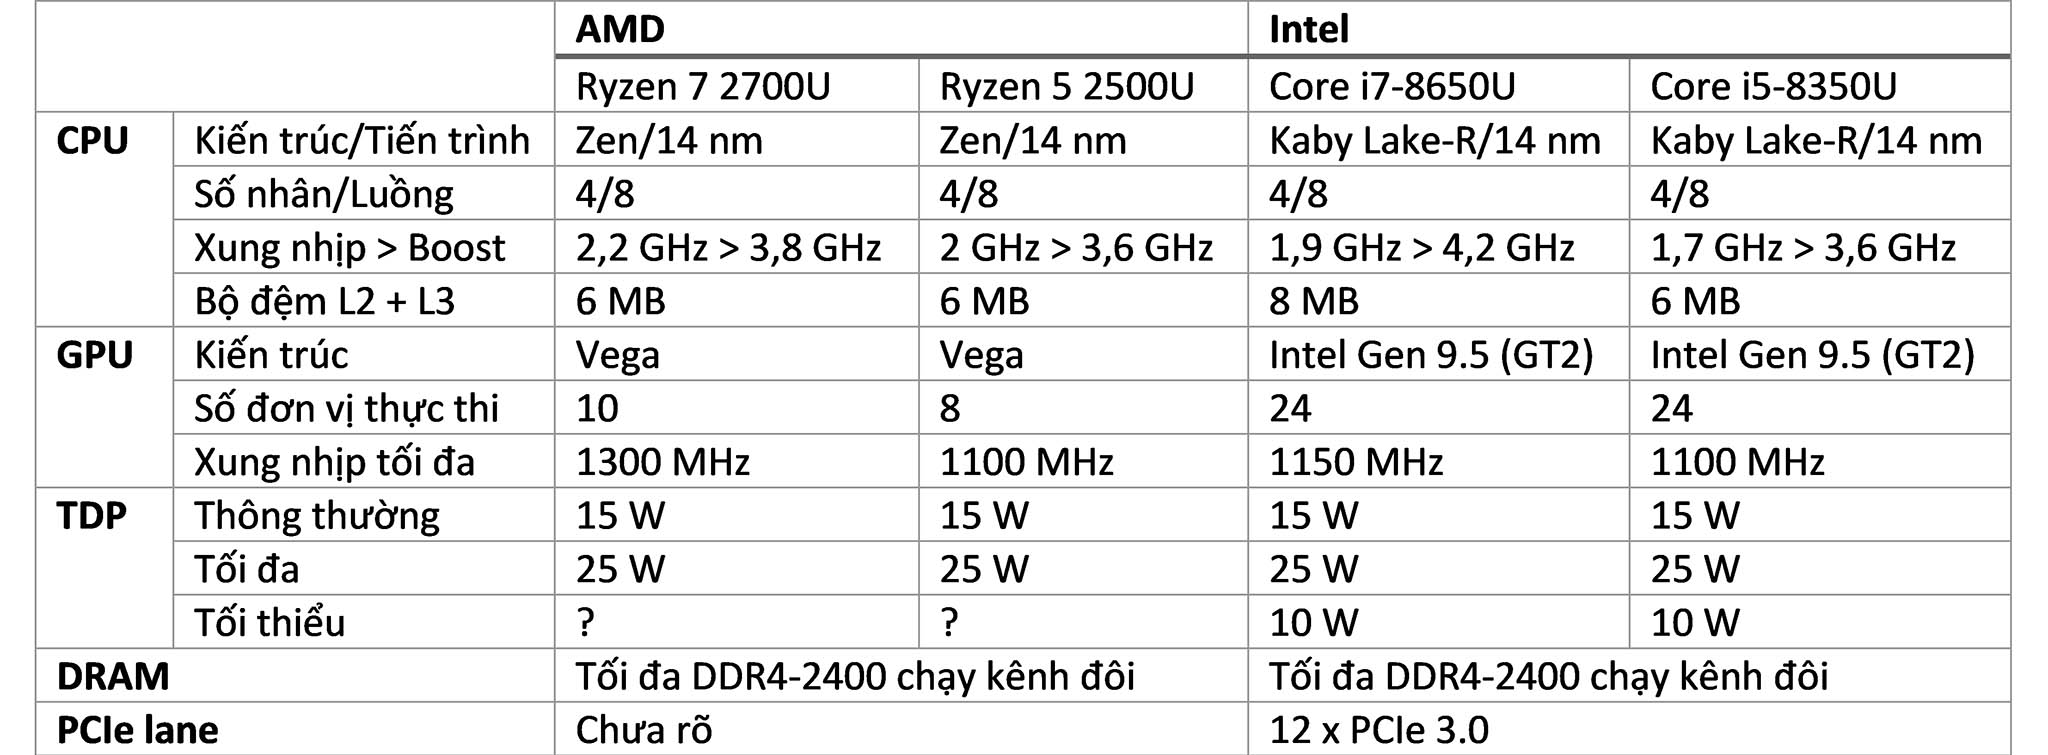 AMD APU vs Intel CPU.jpg